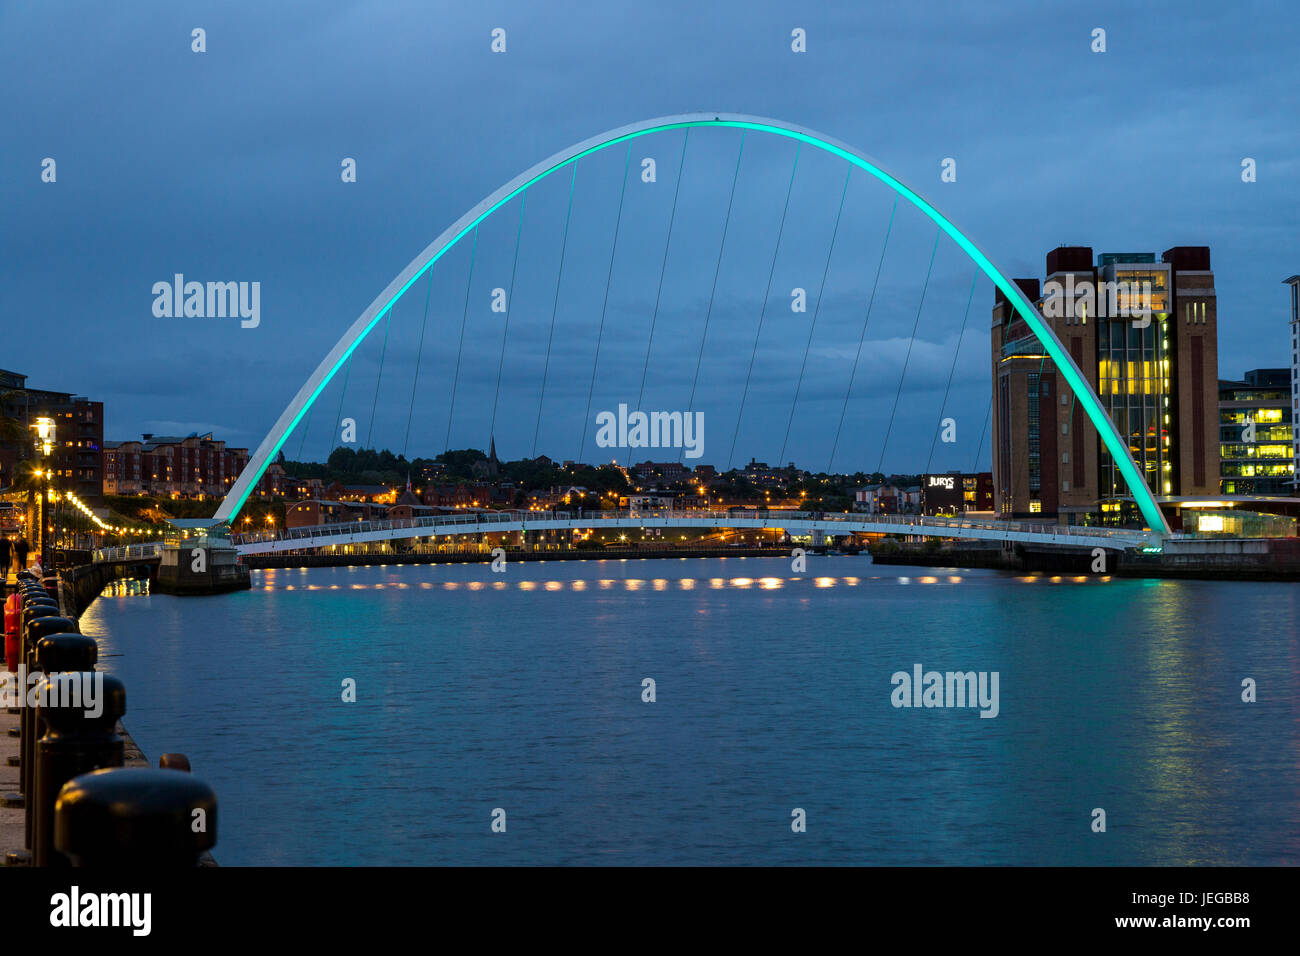 Newcastle-upon-Tyne, Inglaterra, Reino Unido. Puente Gateshead Millennium Bridge sobre el río Tyne en la noche. Foto de stock